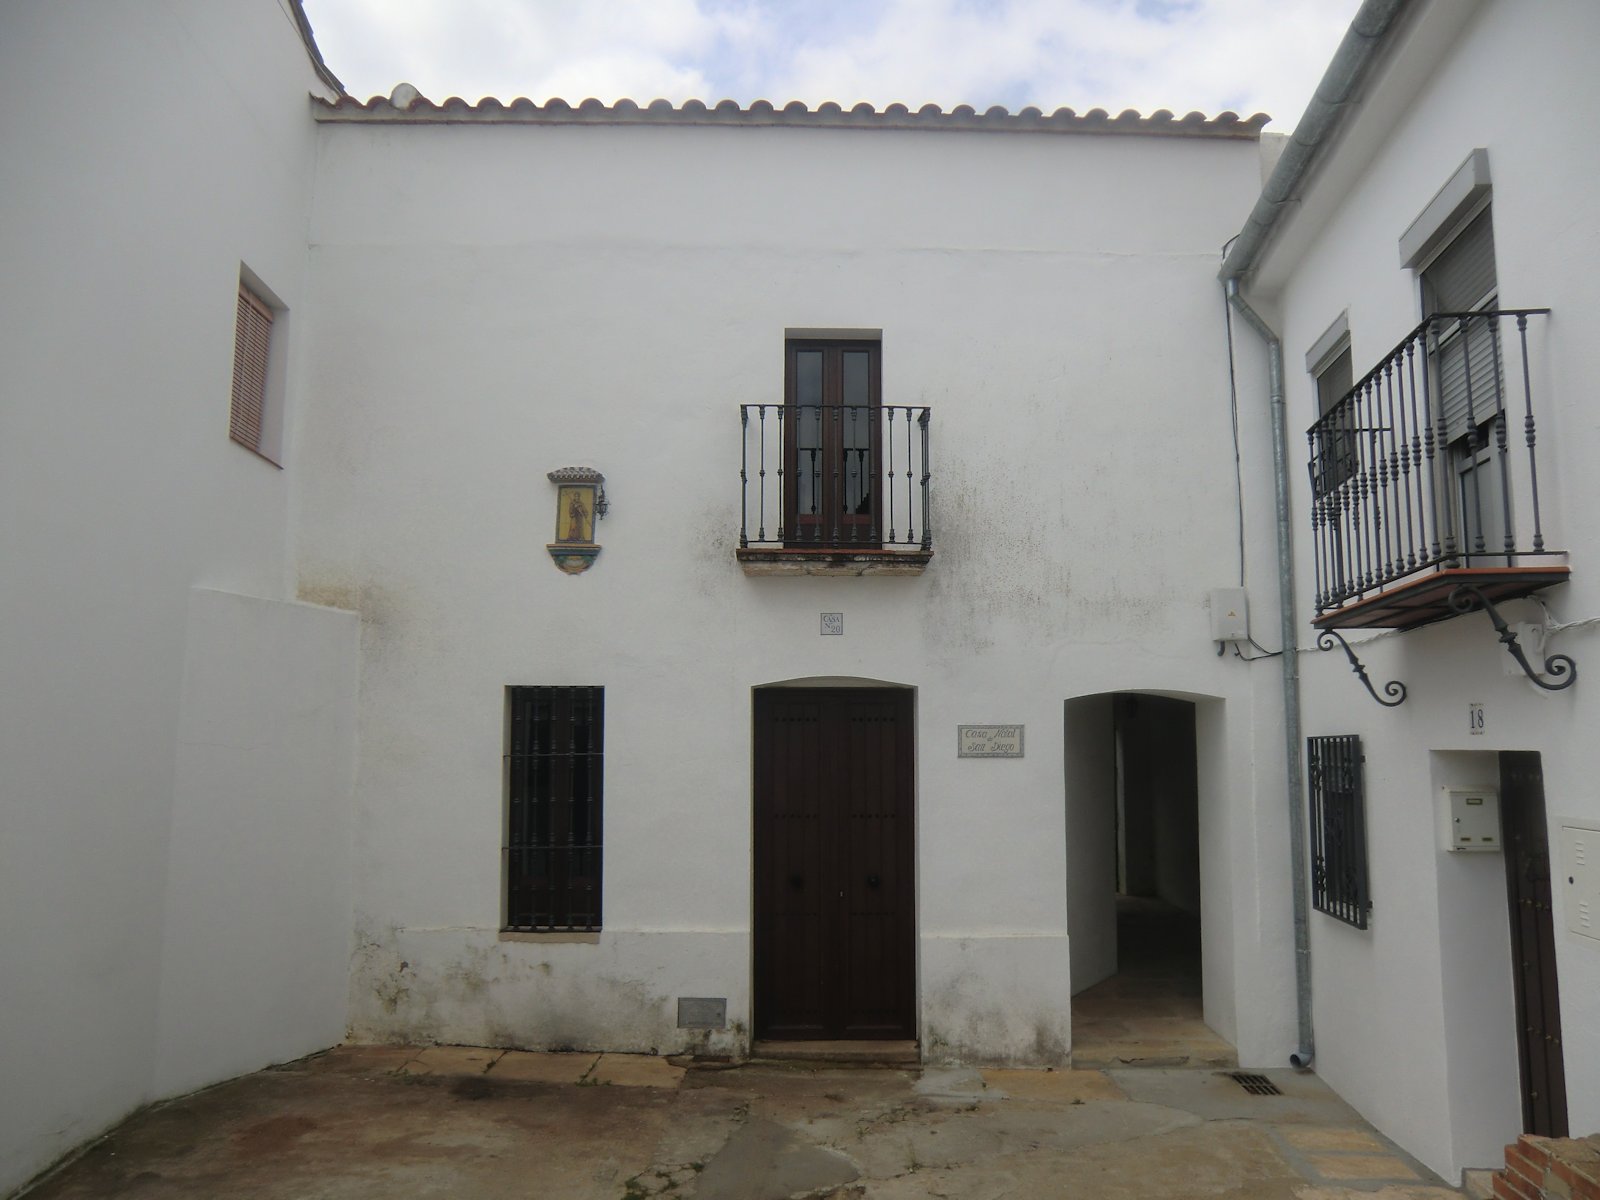 Didactus' Geburtshaus in San Nicolás del Puerto